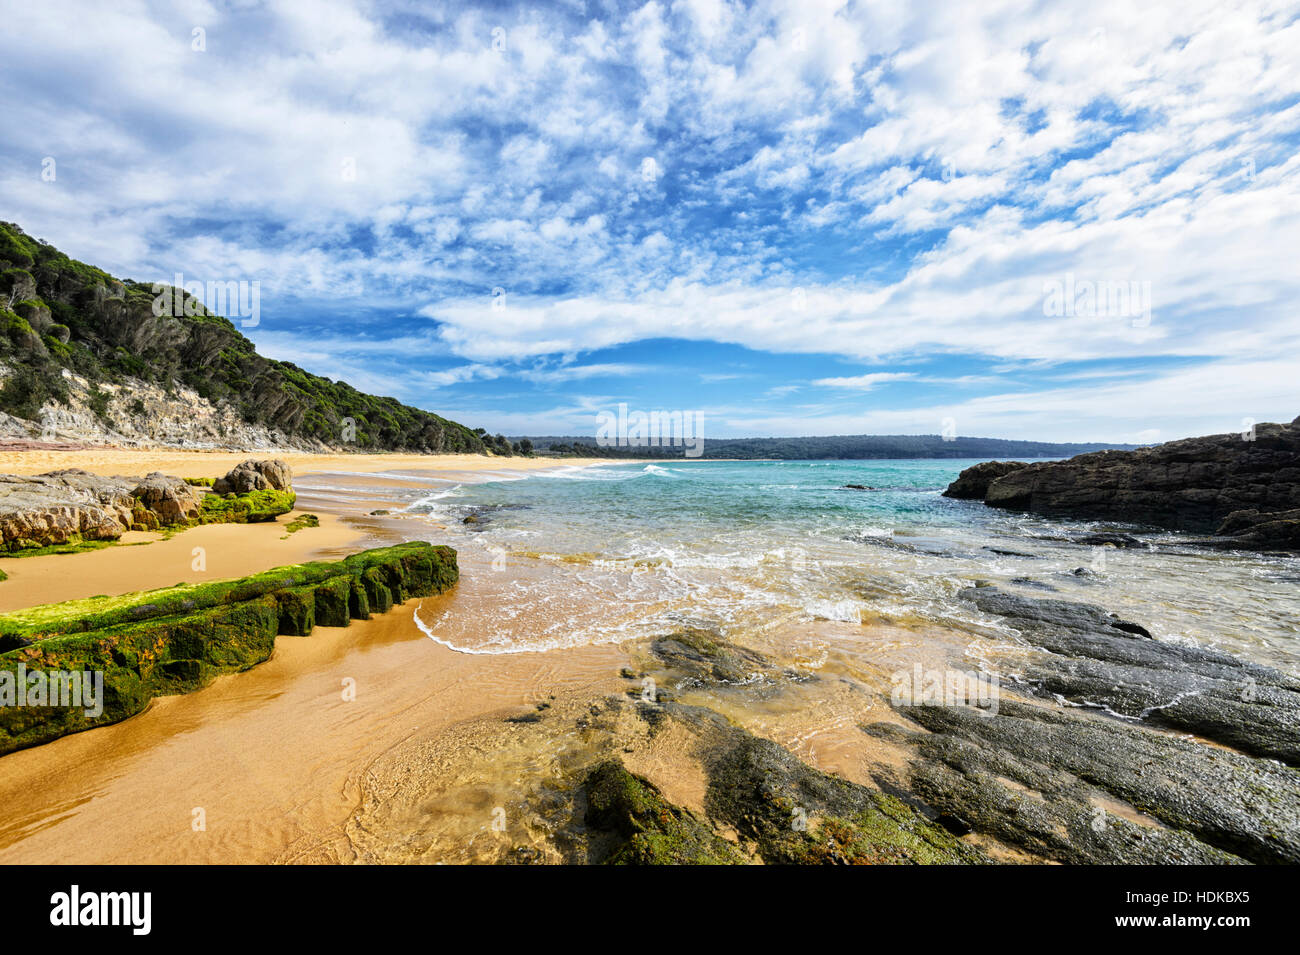 Avis de Aslings Beach, vu de la piscine dans les rochers, Aslings Beach, Eden, Côte Sud, New South Wales, NSW, Australie Banque D'Images